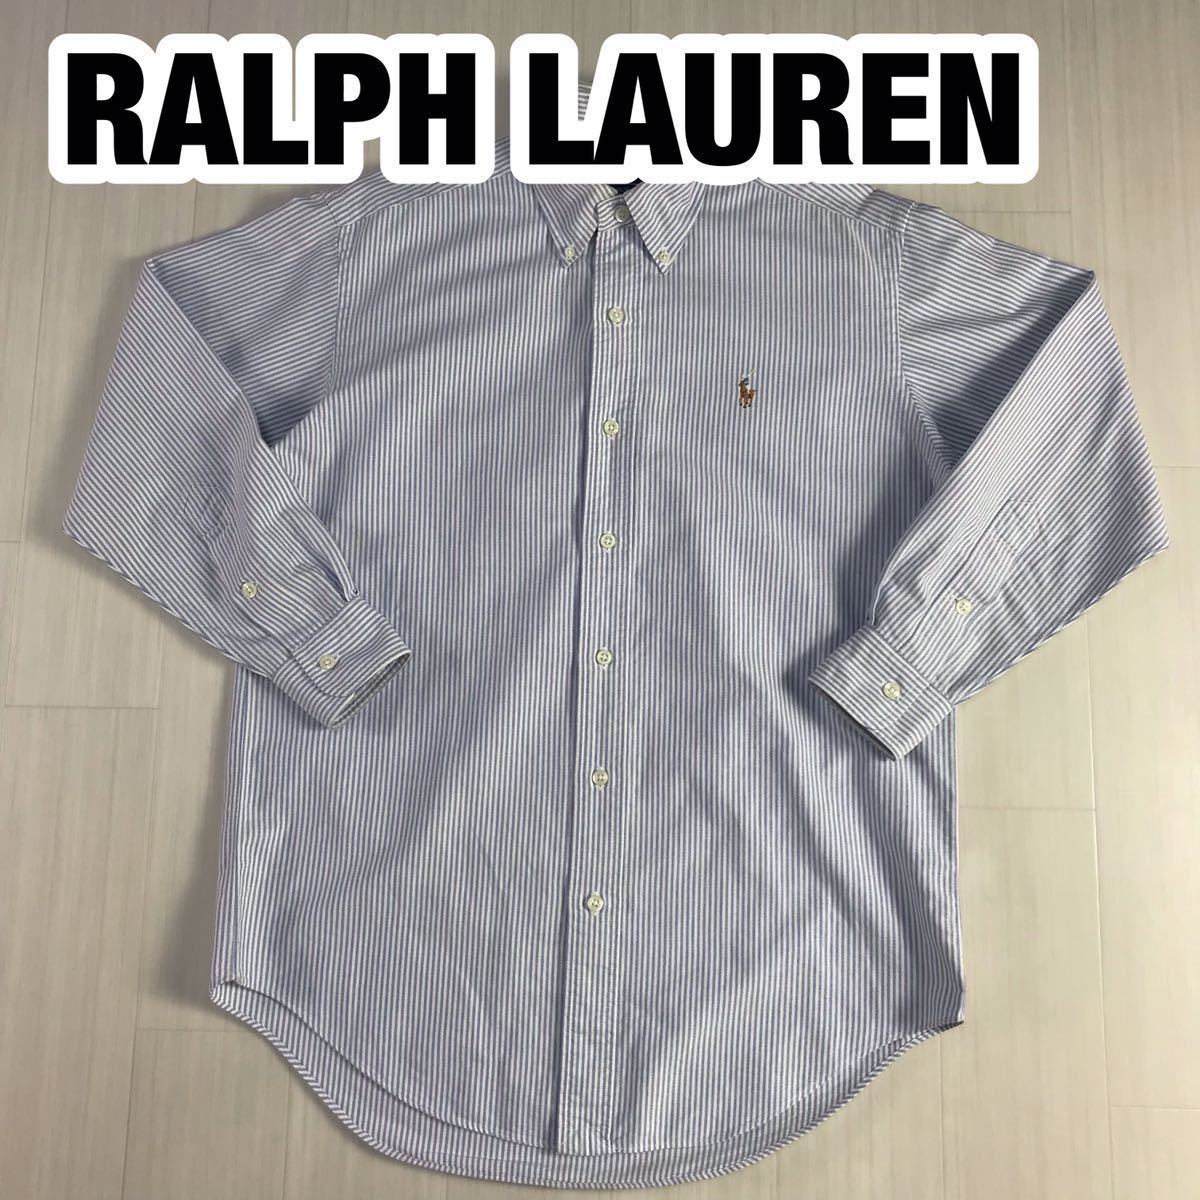 RALPH LAUREN ラルフローレン 長袖シャツ 37-80 ブルー ホワイト ストライプ_画像1